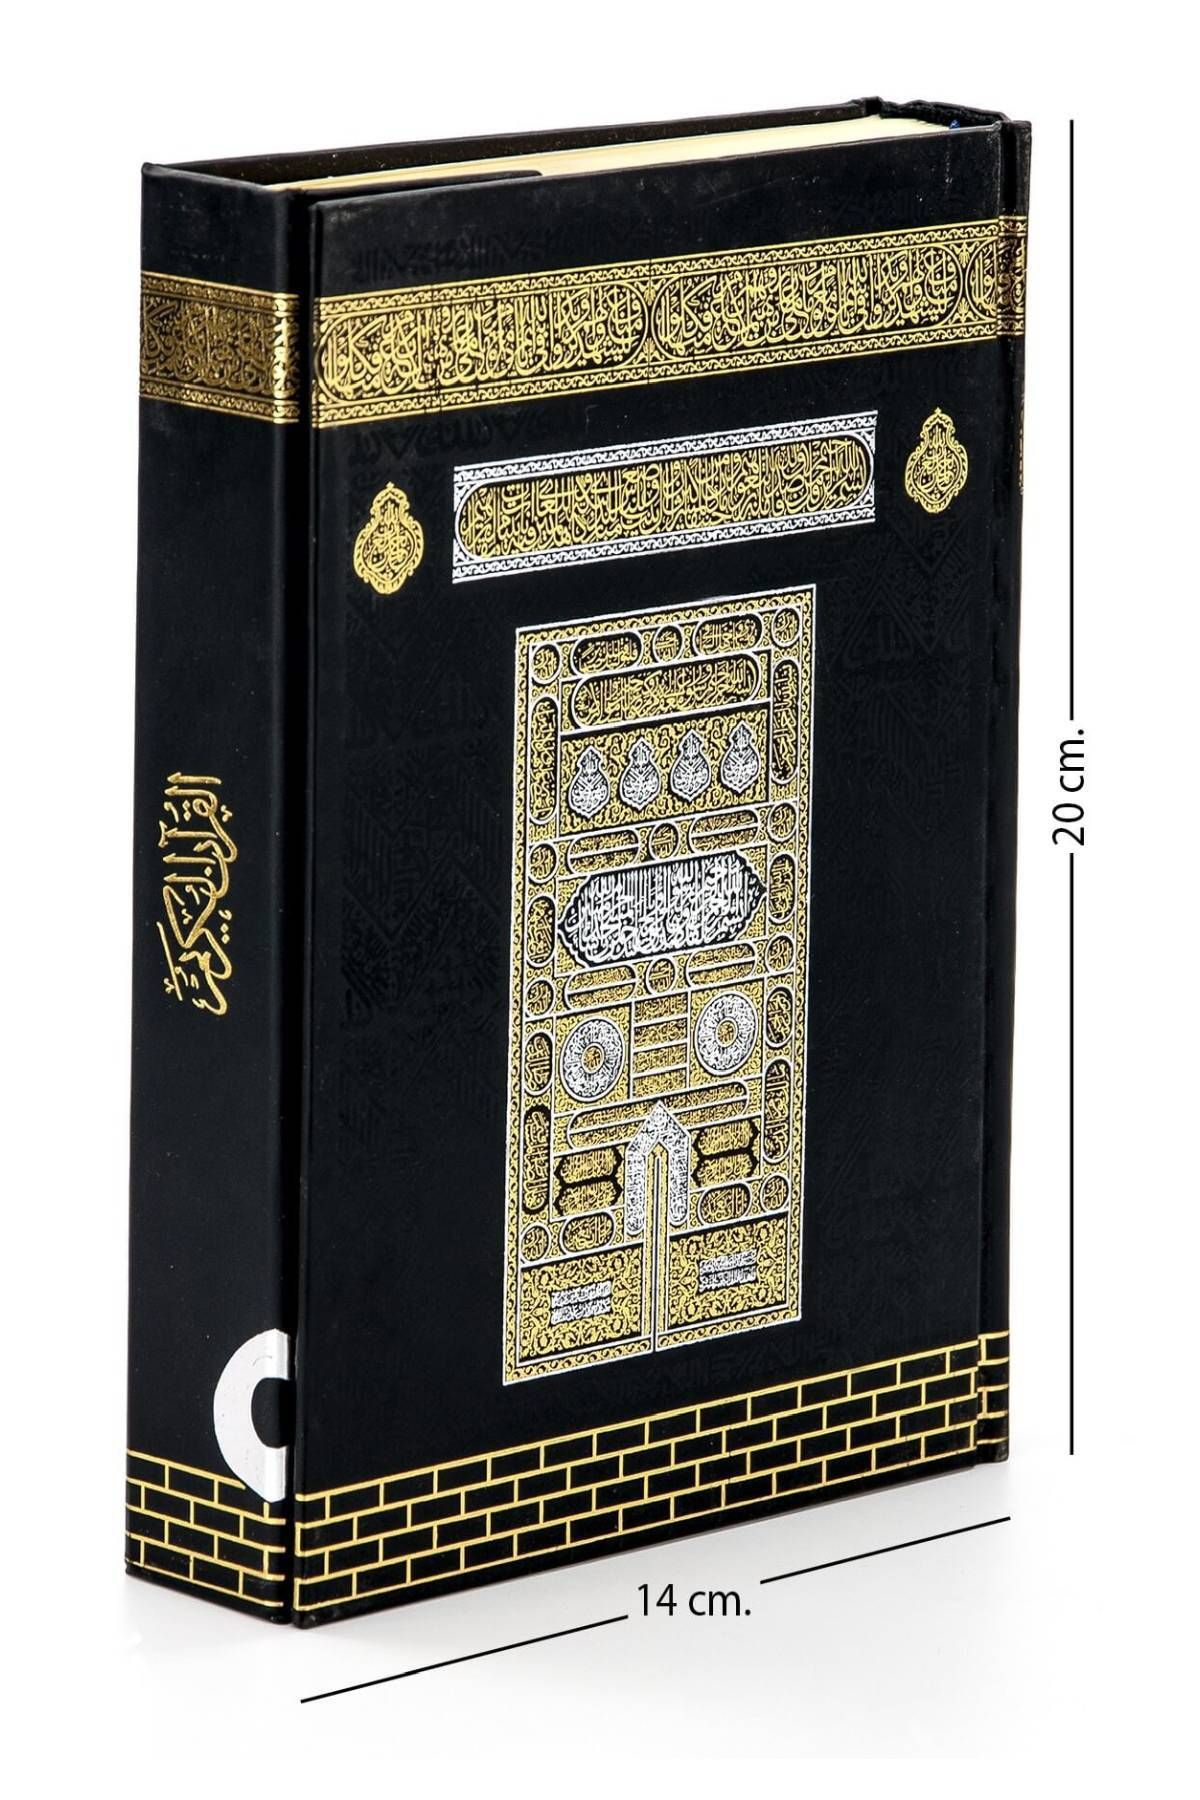 Ayfa Basın Yayın Hafız Boy Kabe Desenli Renkli Kur'an-ı Kerim - 9.1123 447114